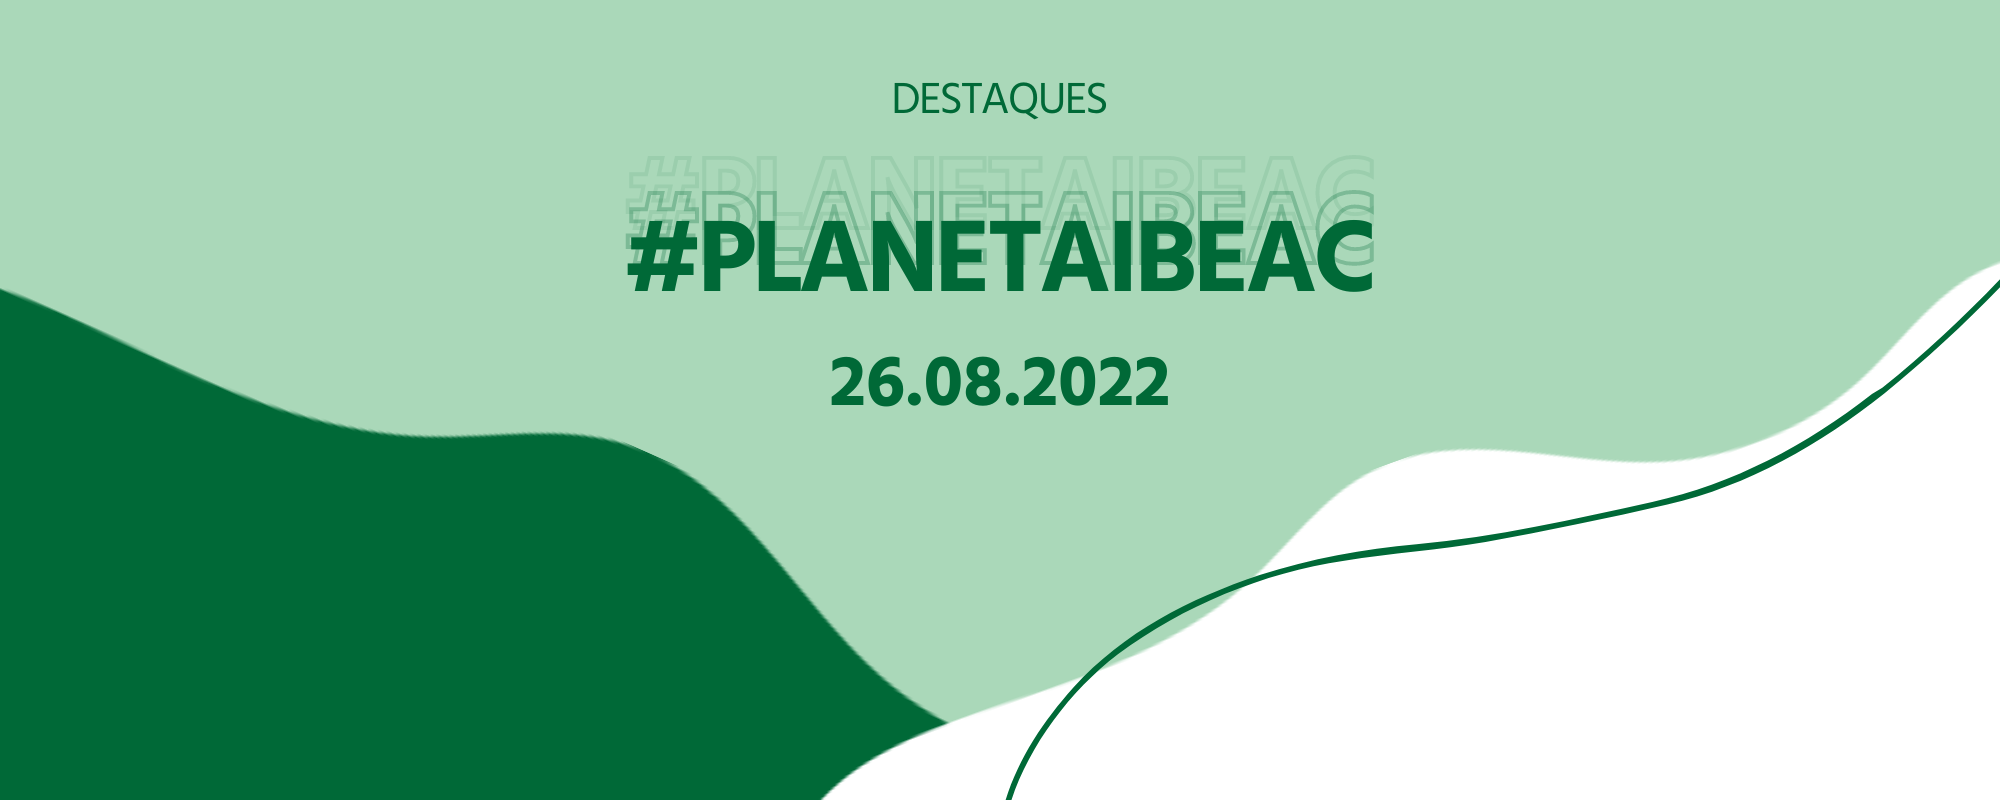 Destaques #Planetaibeac 26.08.2022